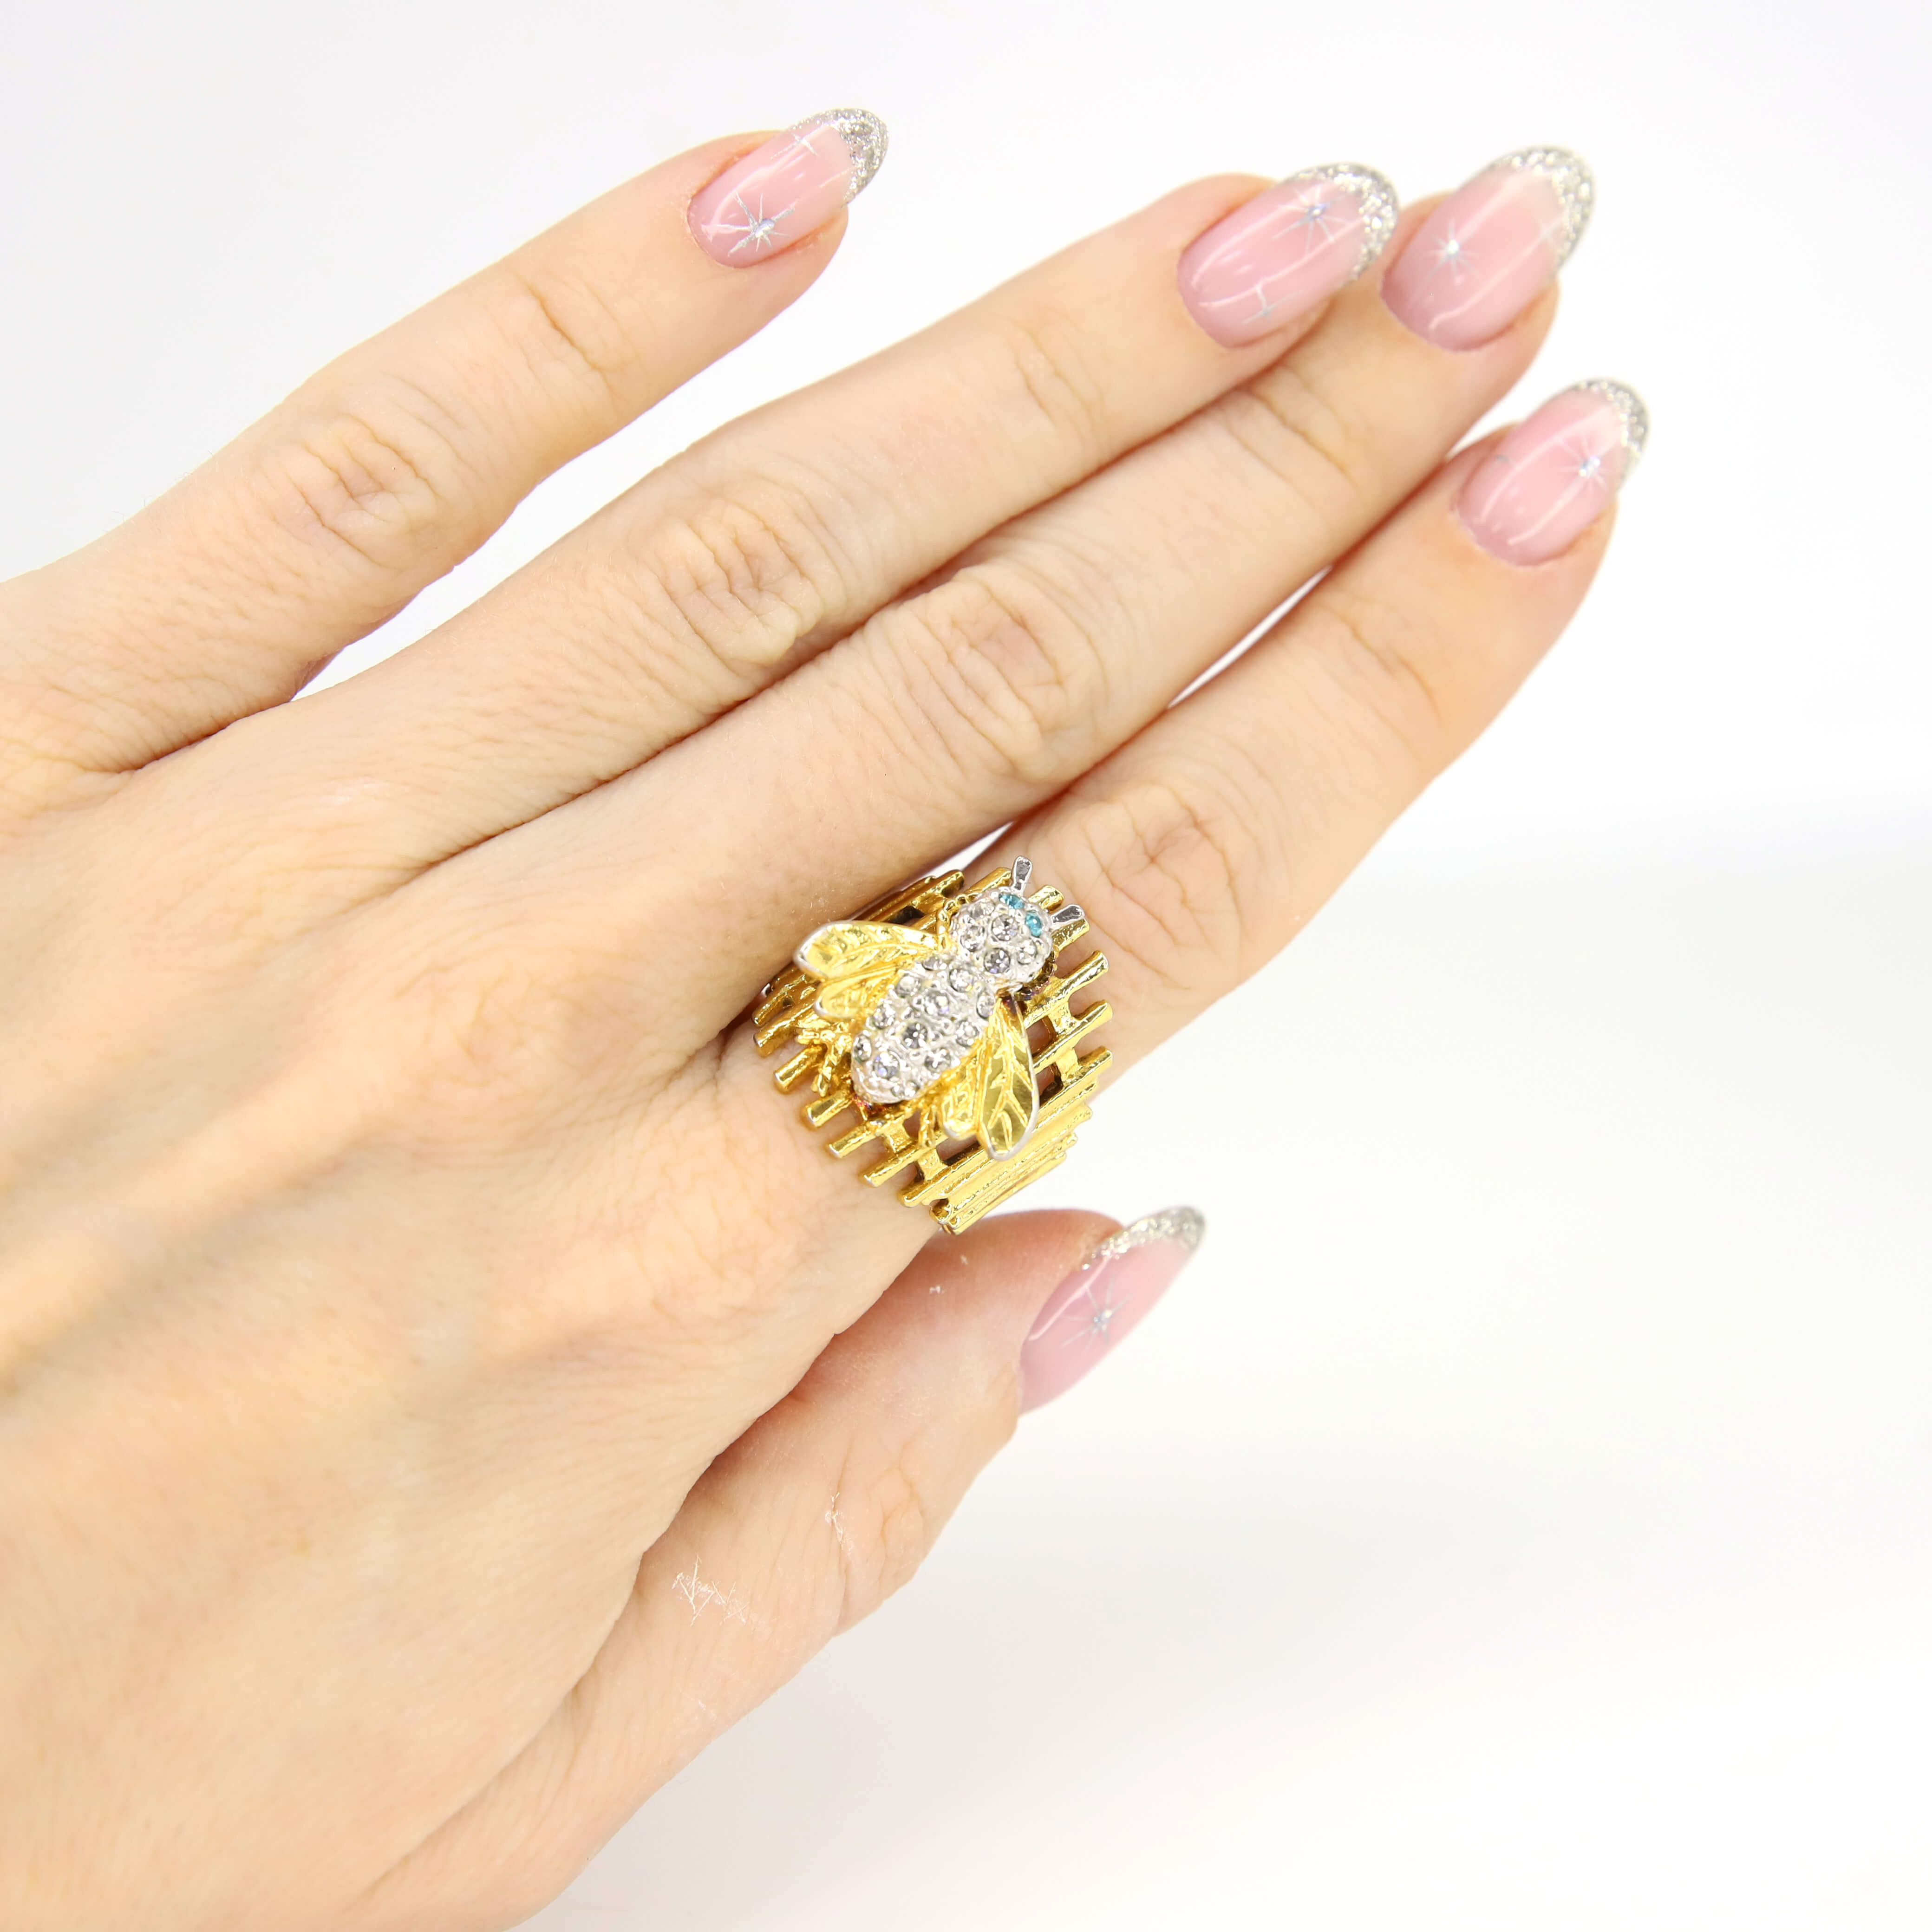 Винтажное кольцо с золотым покрытием размер 18, цвет Золото, фото 1